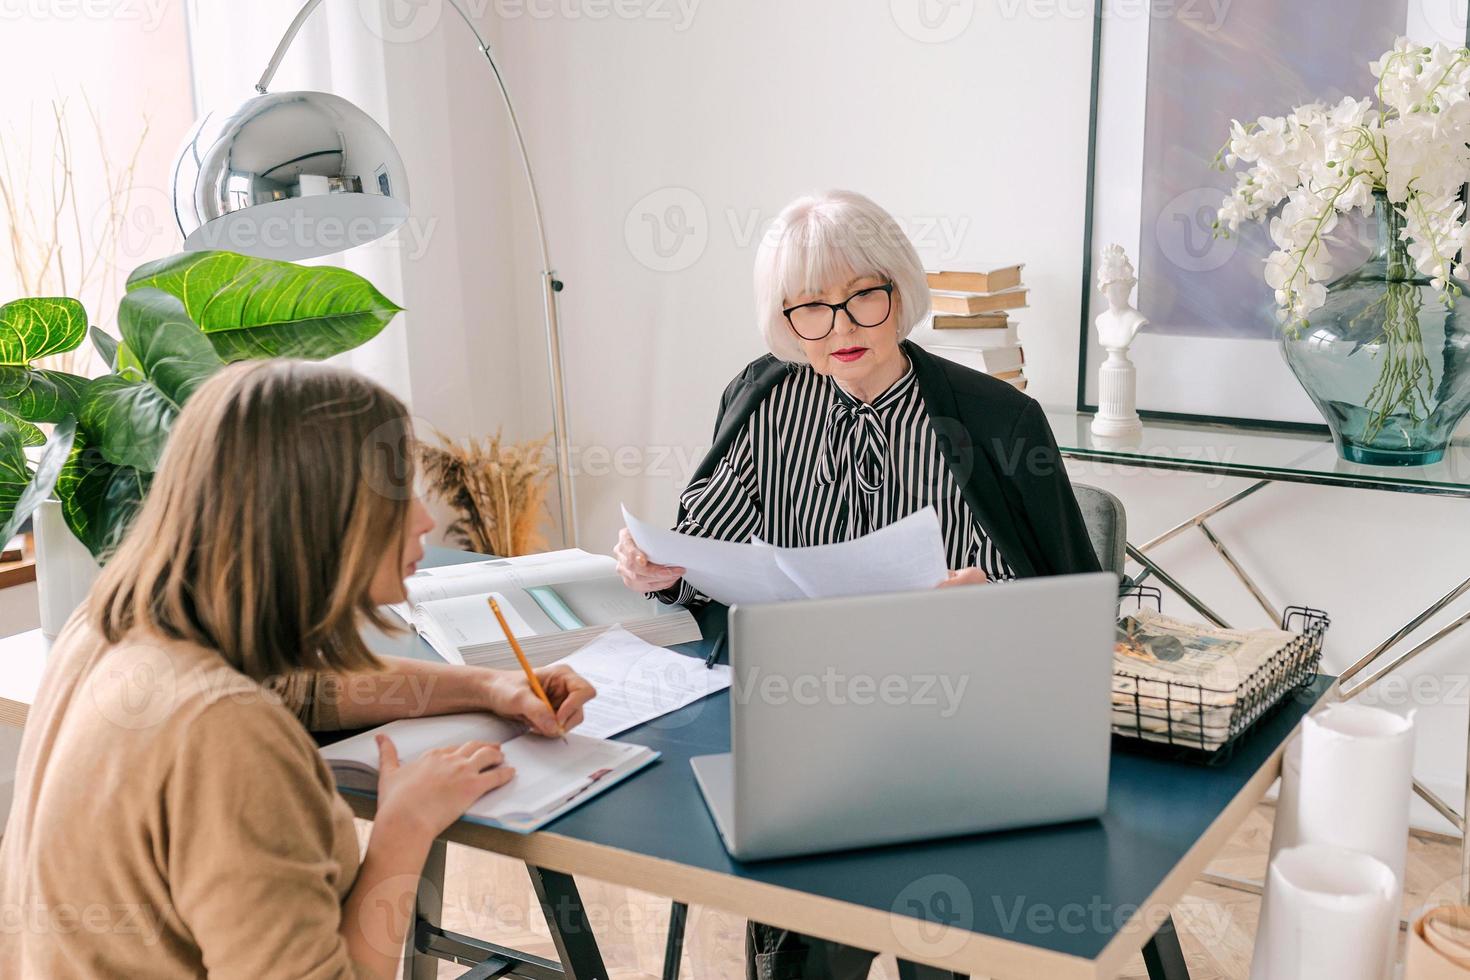 mujer con estilo senior con mujer joven discutiendo las tareas laborales en la oficina. negocio, comunicación, trabajo, edades, colaboración, concepto de tutoría foto